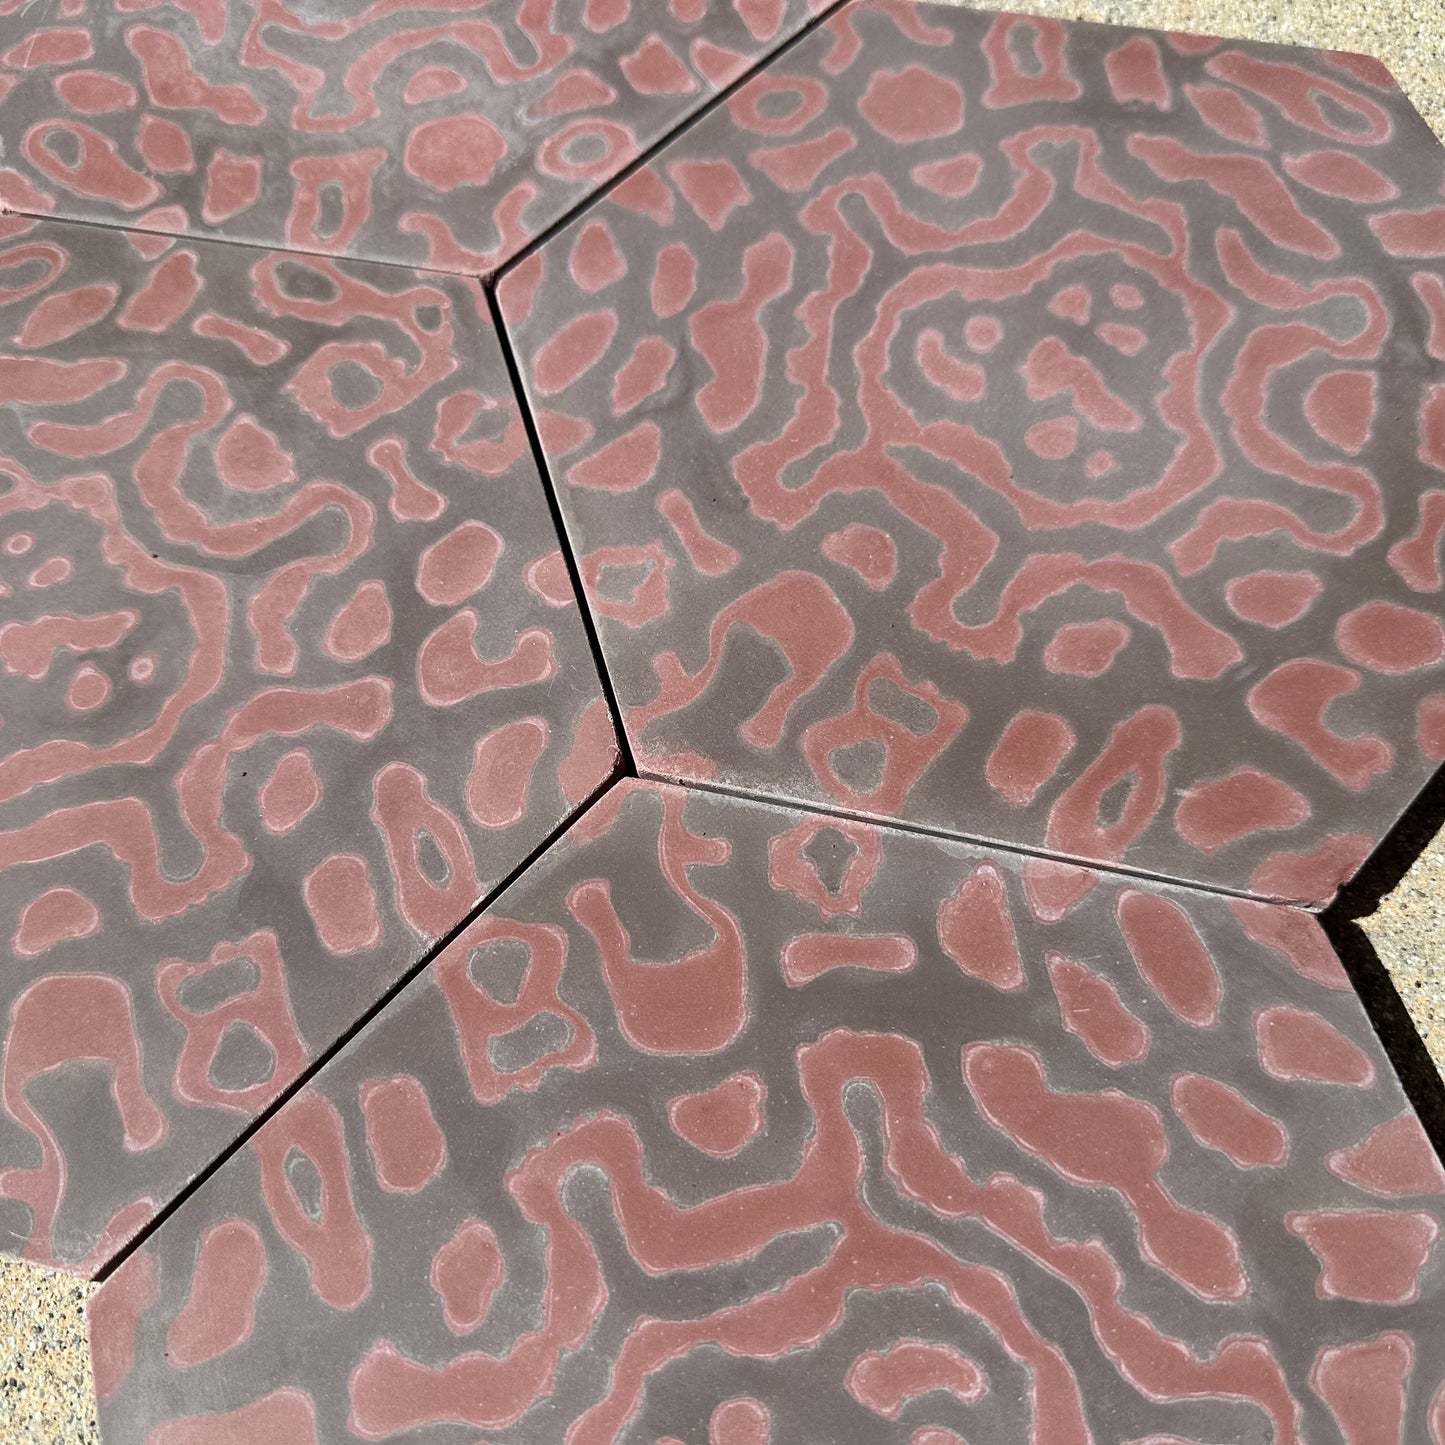 Tesselle | Bambarri Firebrand 9"x8" Hexagonal Cement Tile